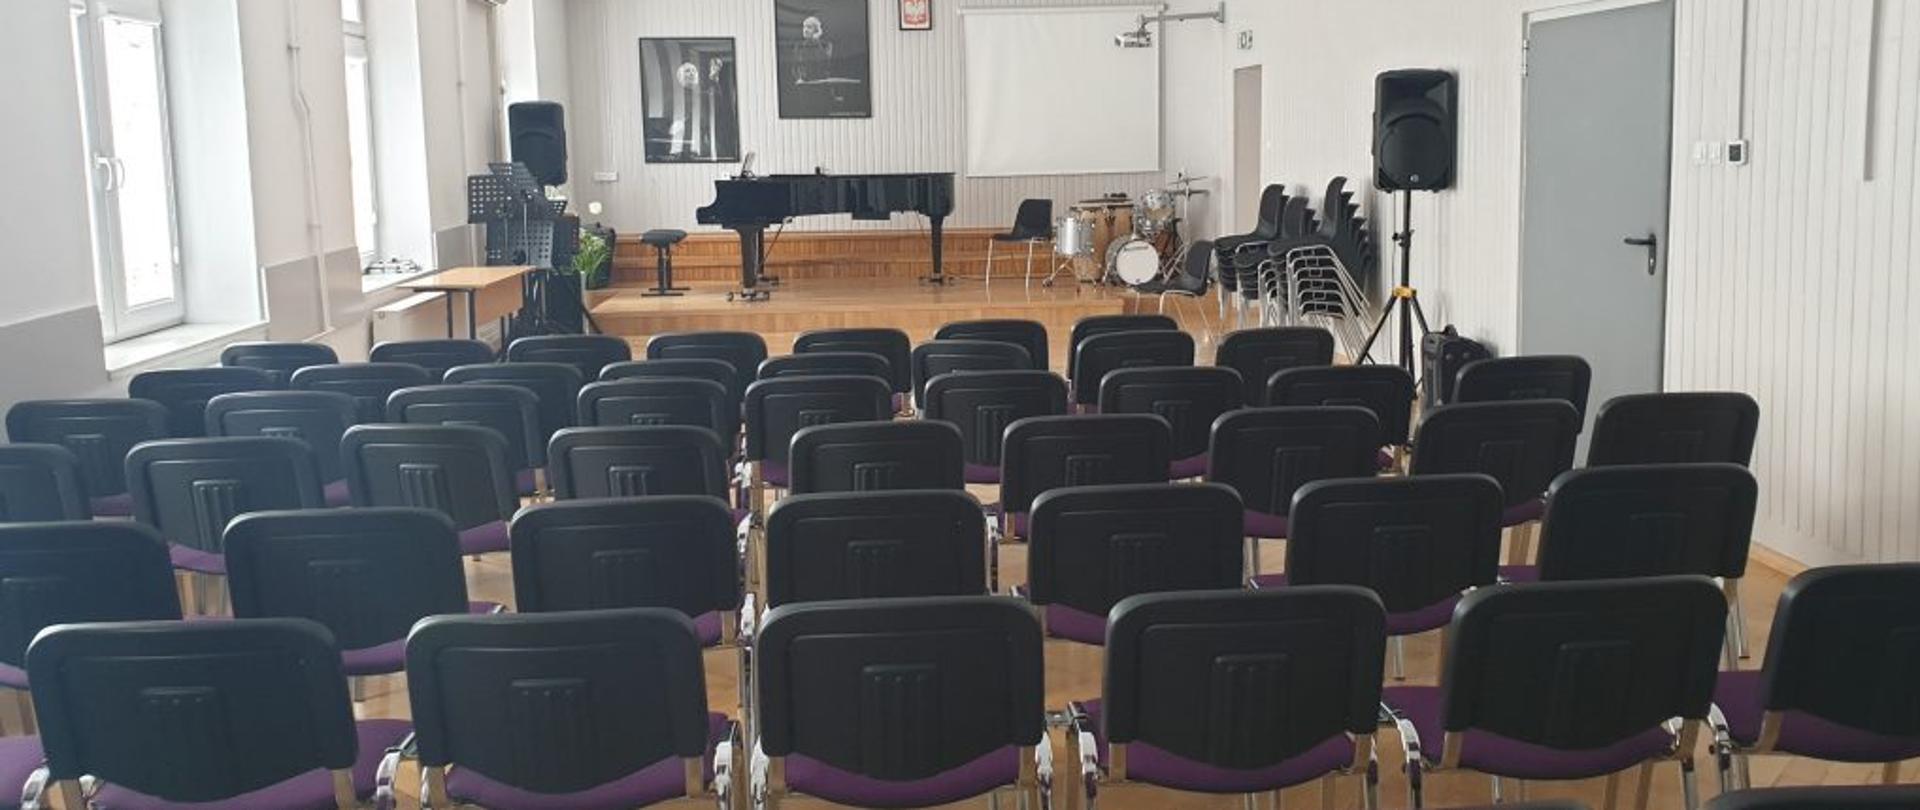 Na zdjęciu znajduje się scena w auli PSM, na której znajduje się fortepian, perkusja, pulpity i krzesła, na ścianie wiszą fotografie z Witoldem Lutosławskim oraz tablica interaktywna, na widowni sześć rzędów krzeseł